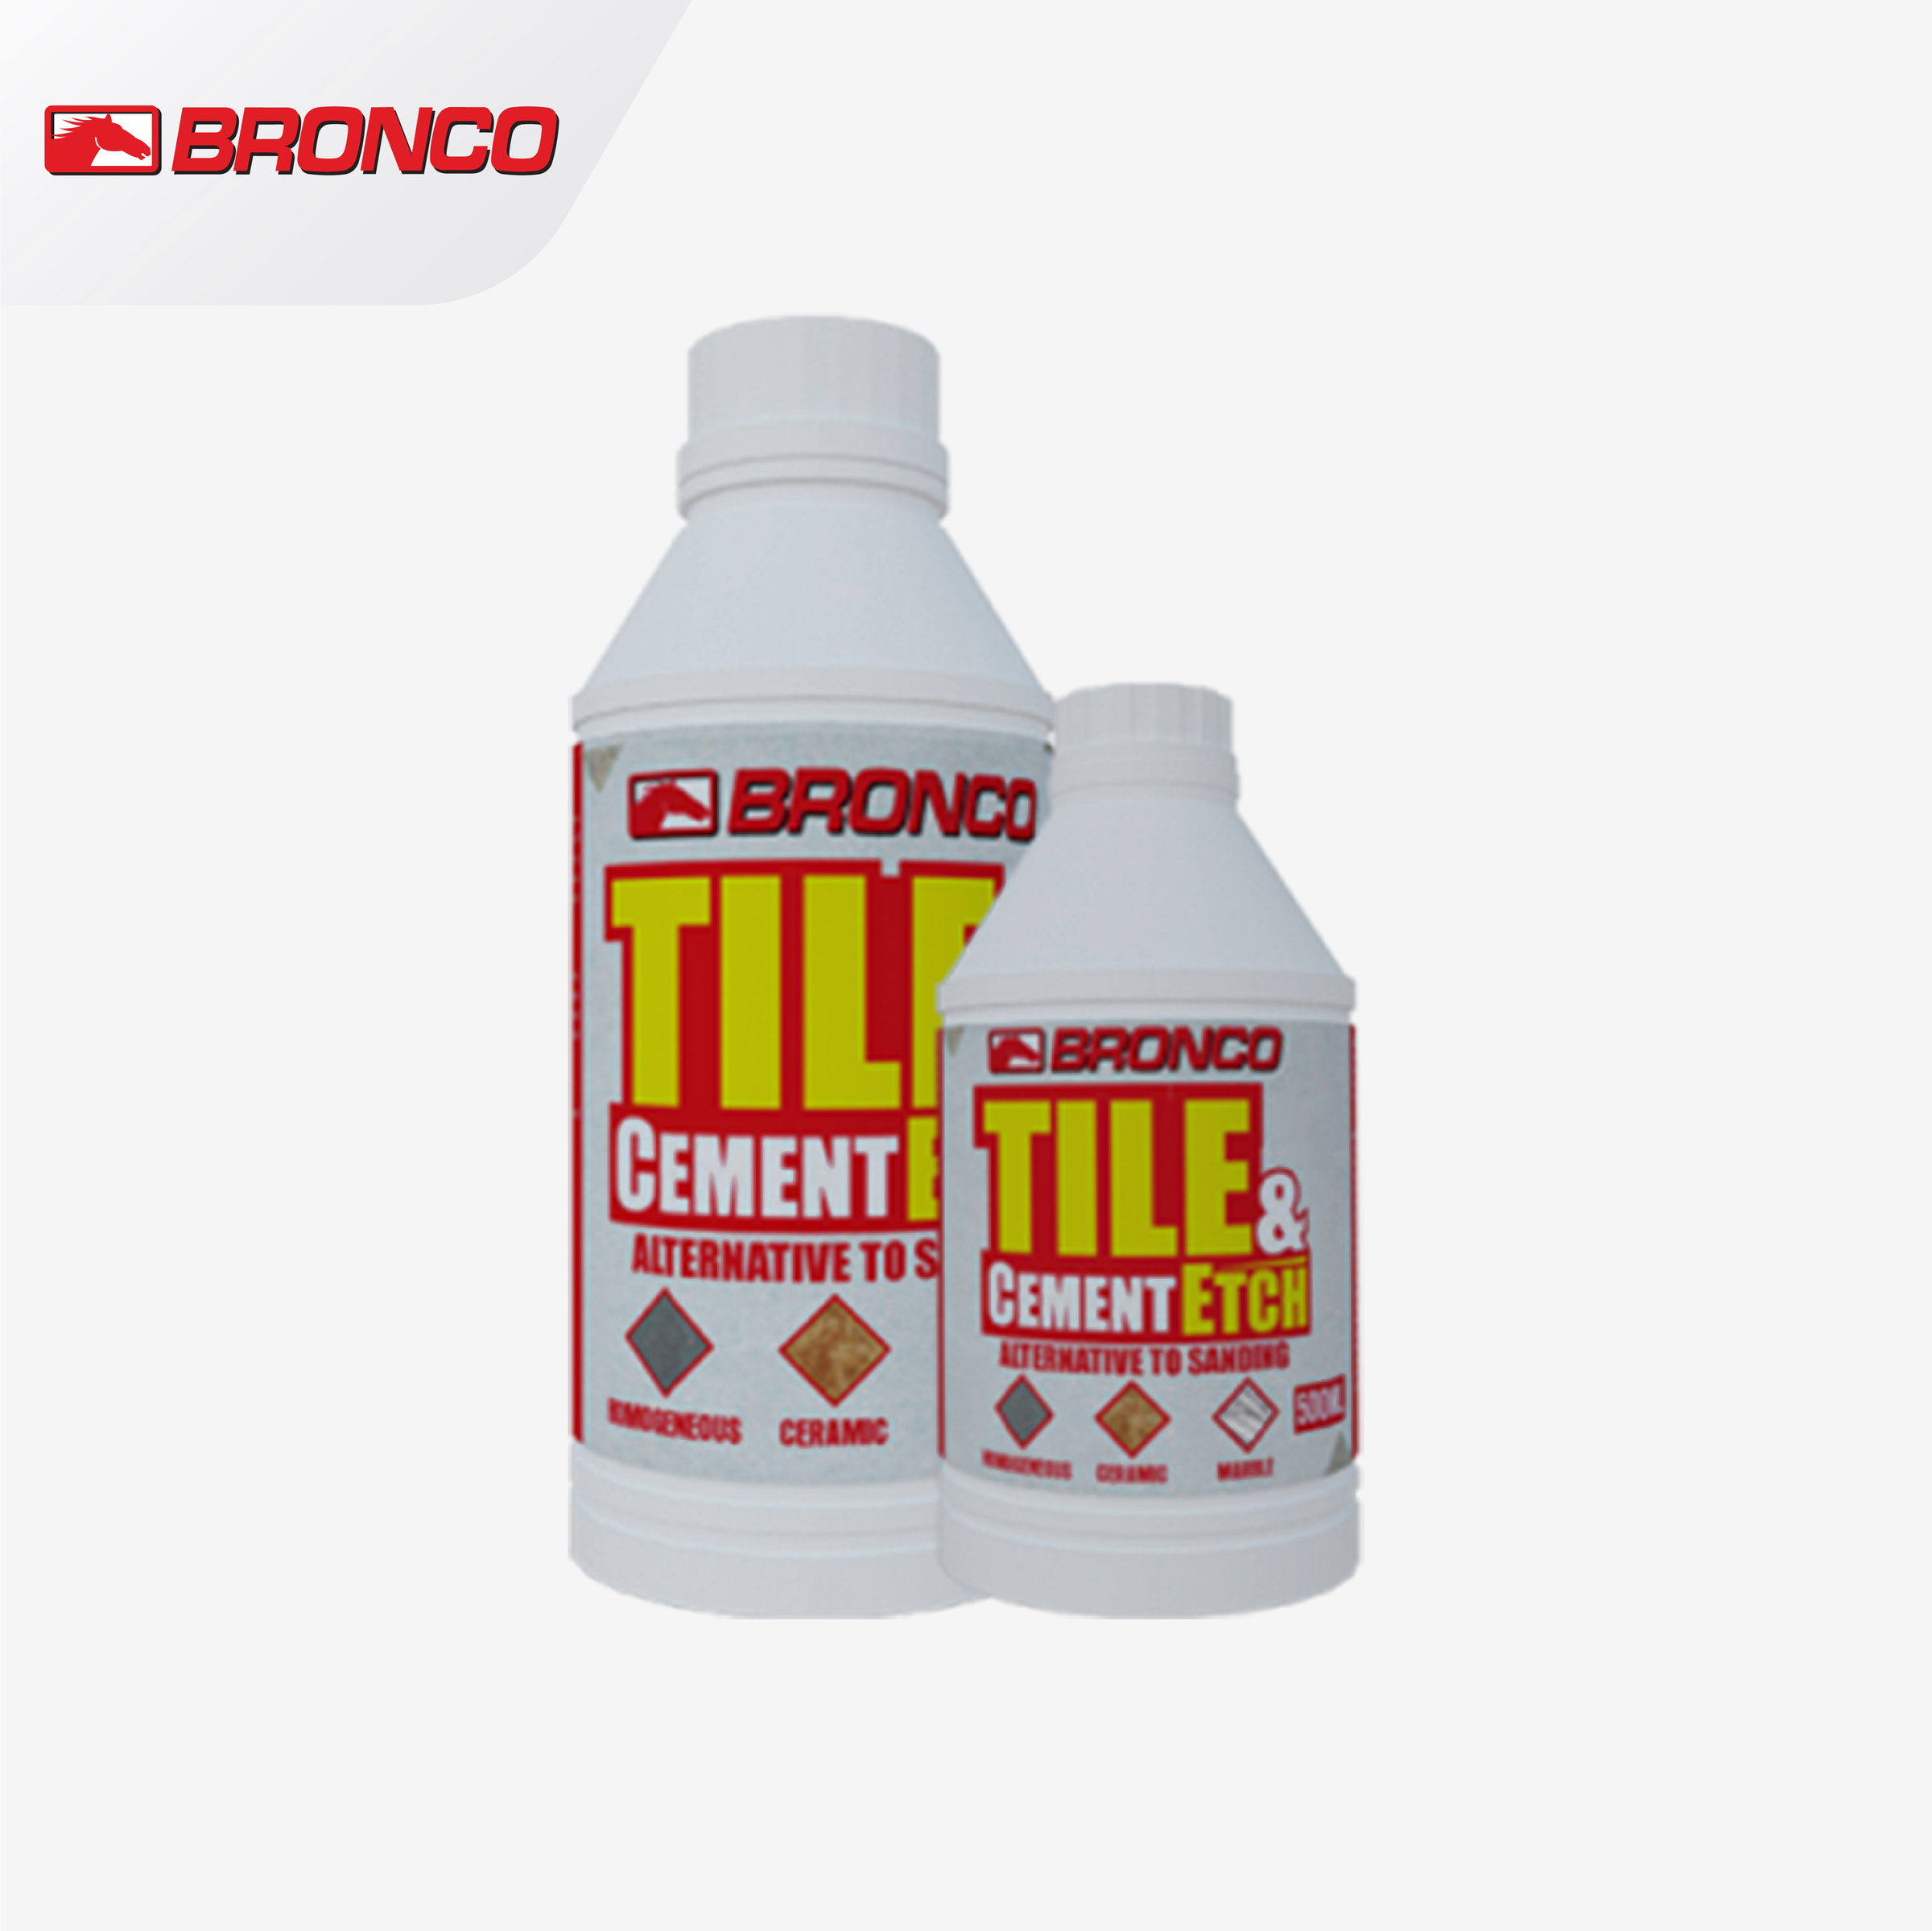 Bronco Tile & Cement Etch